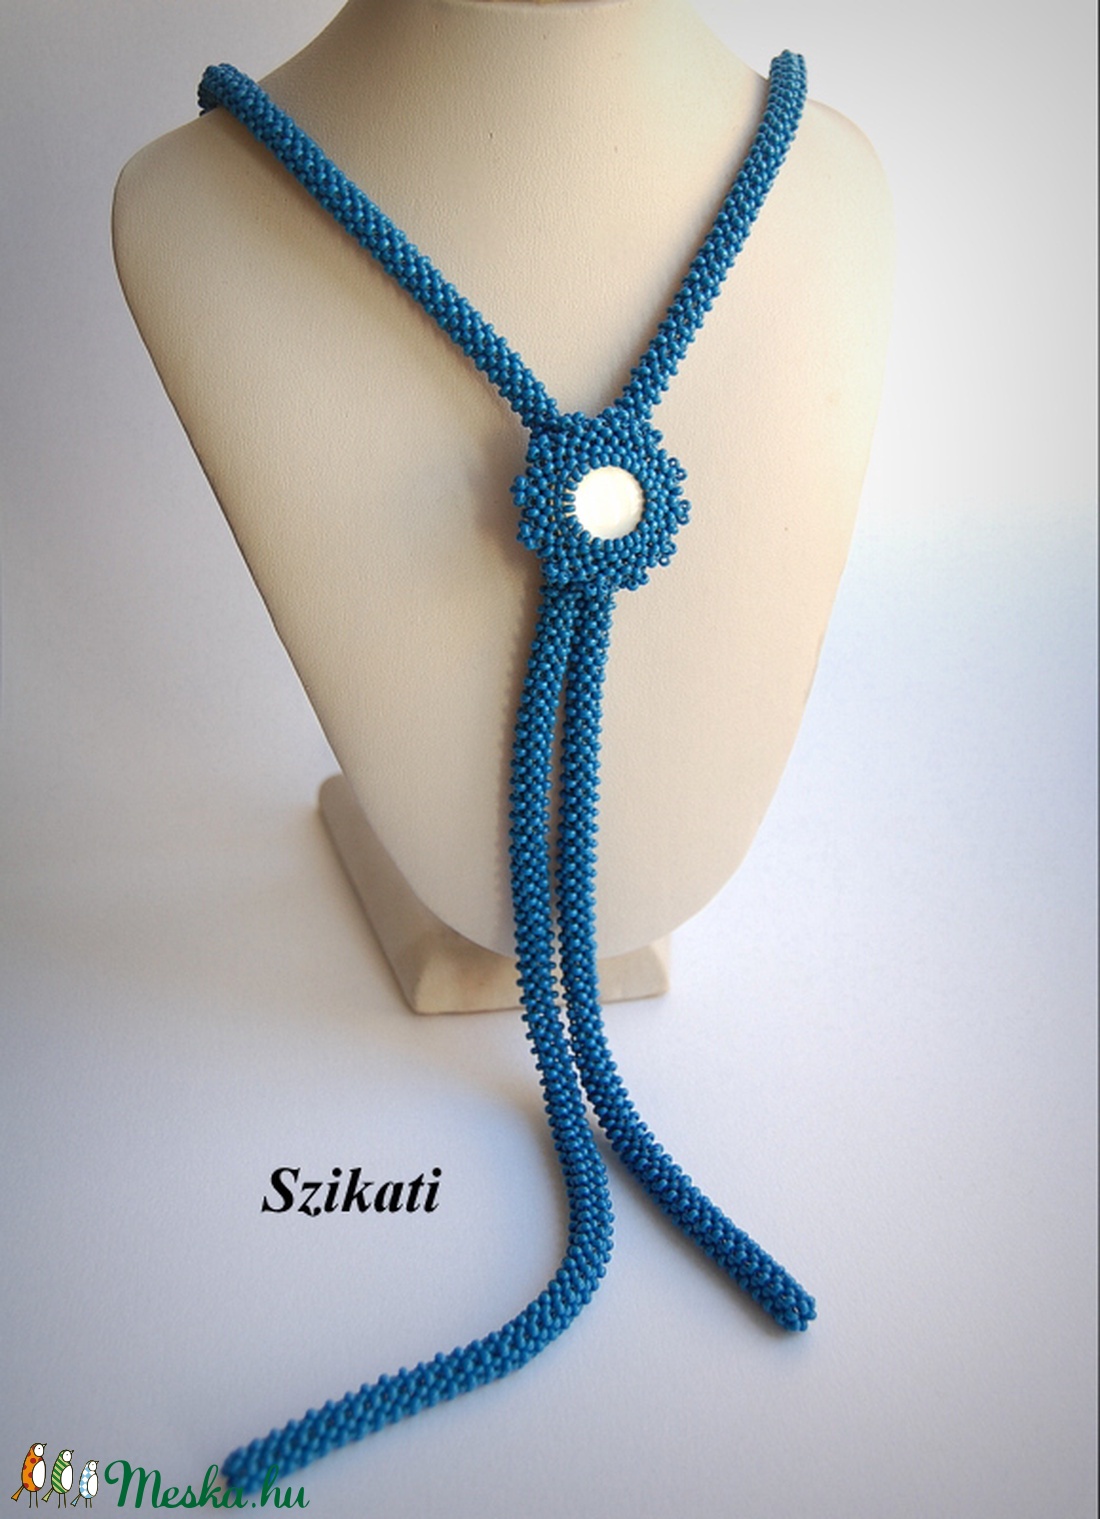 Kék hosszú gyöngyfűzött nyaklánc -  - Meska.hu